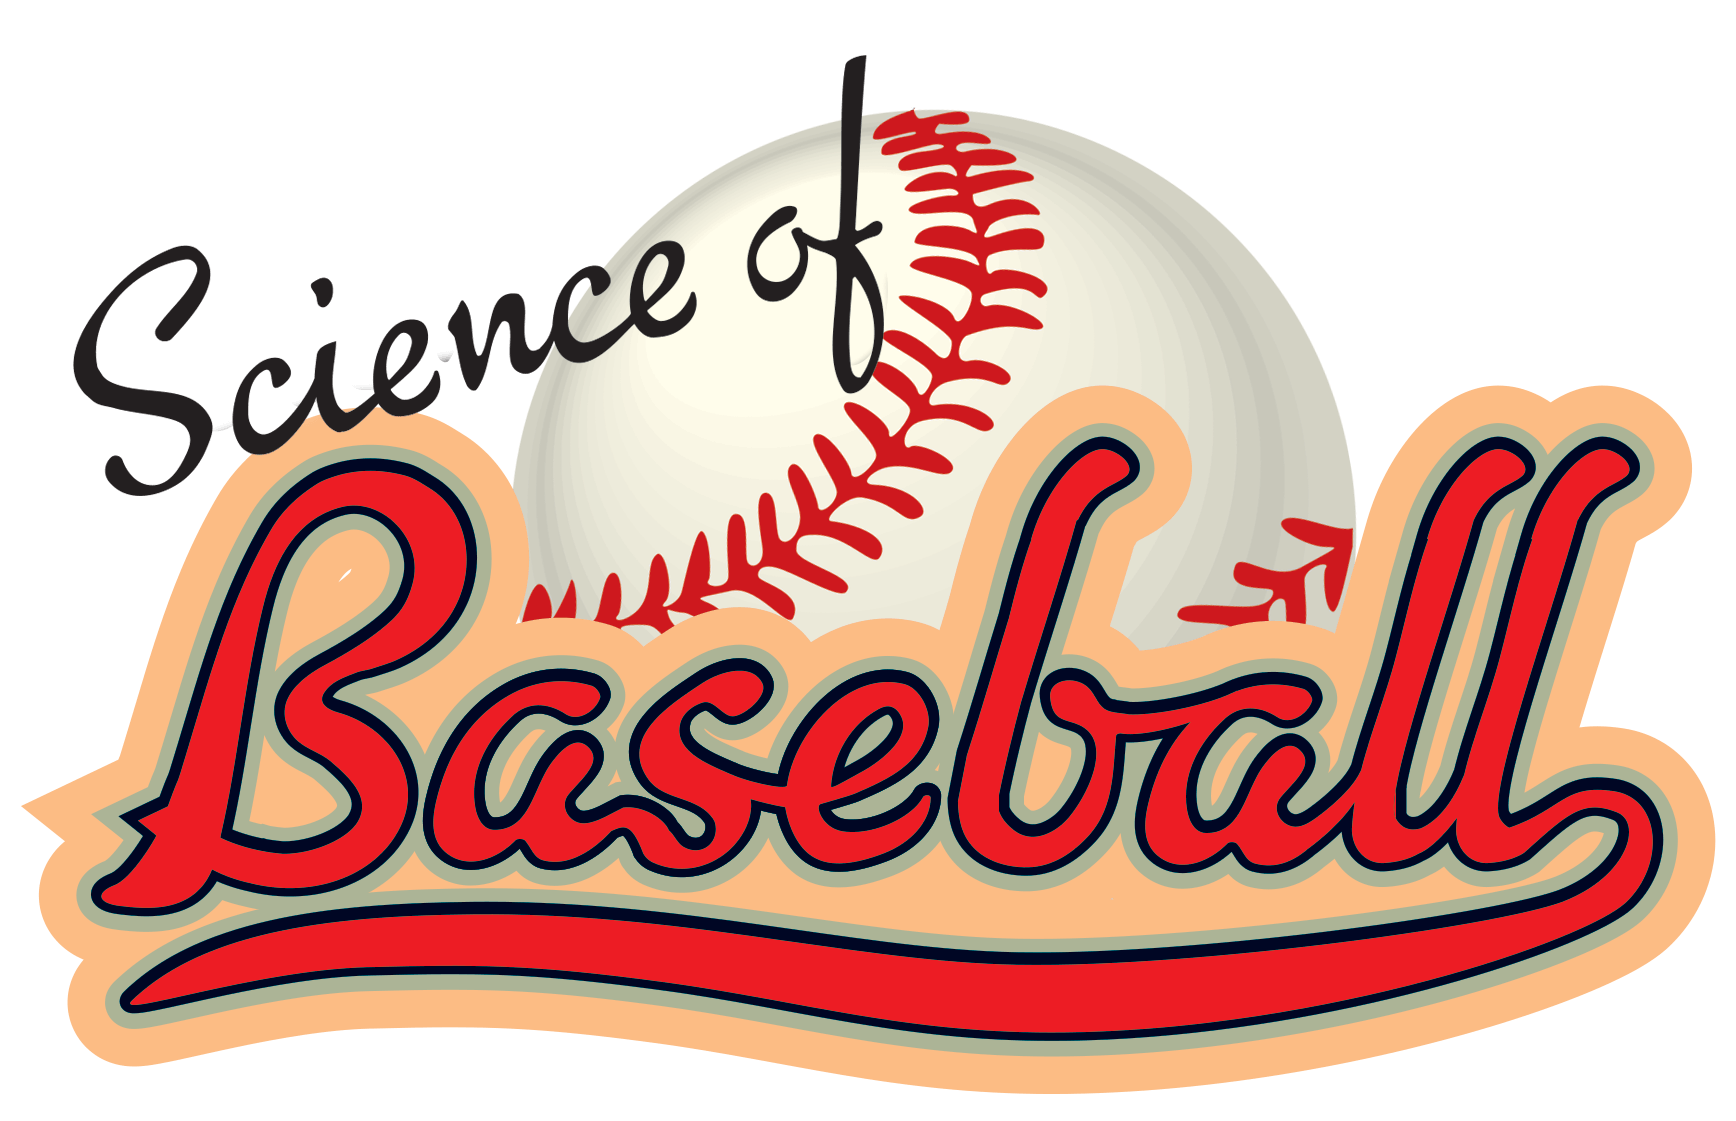 Www.baseball Logo - Science of Baseball